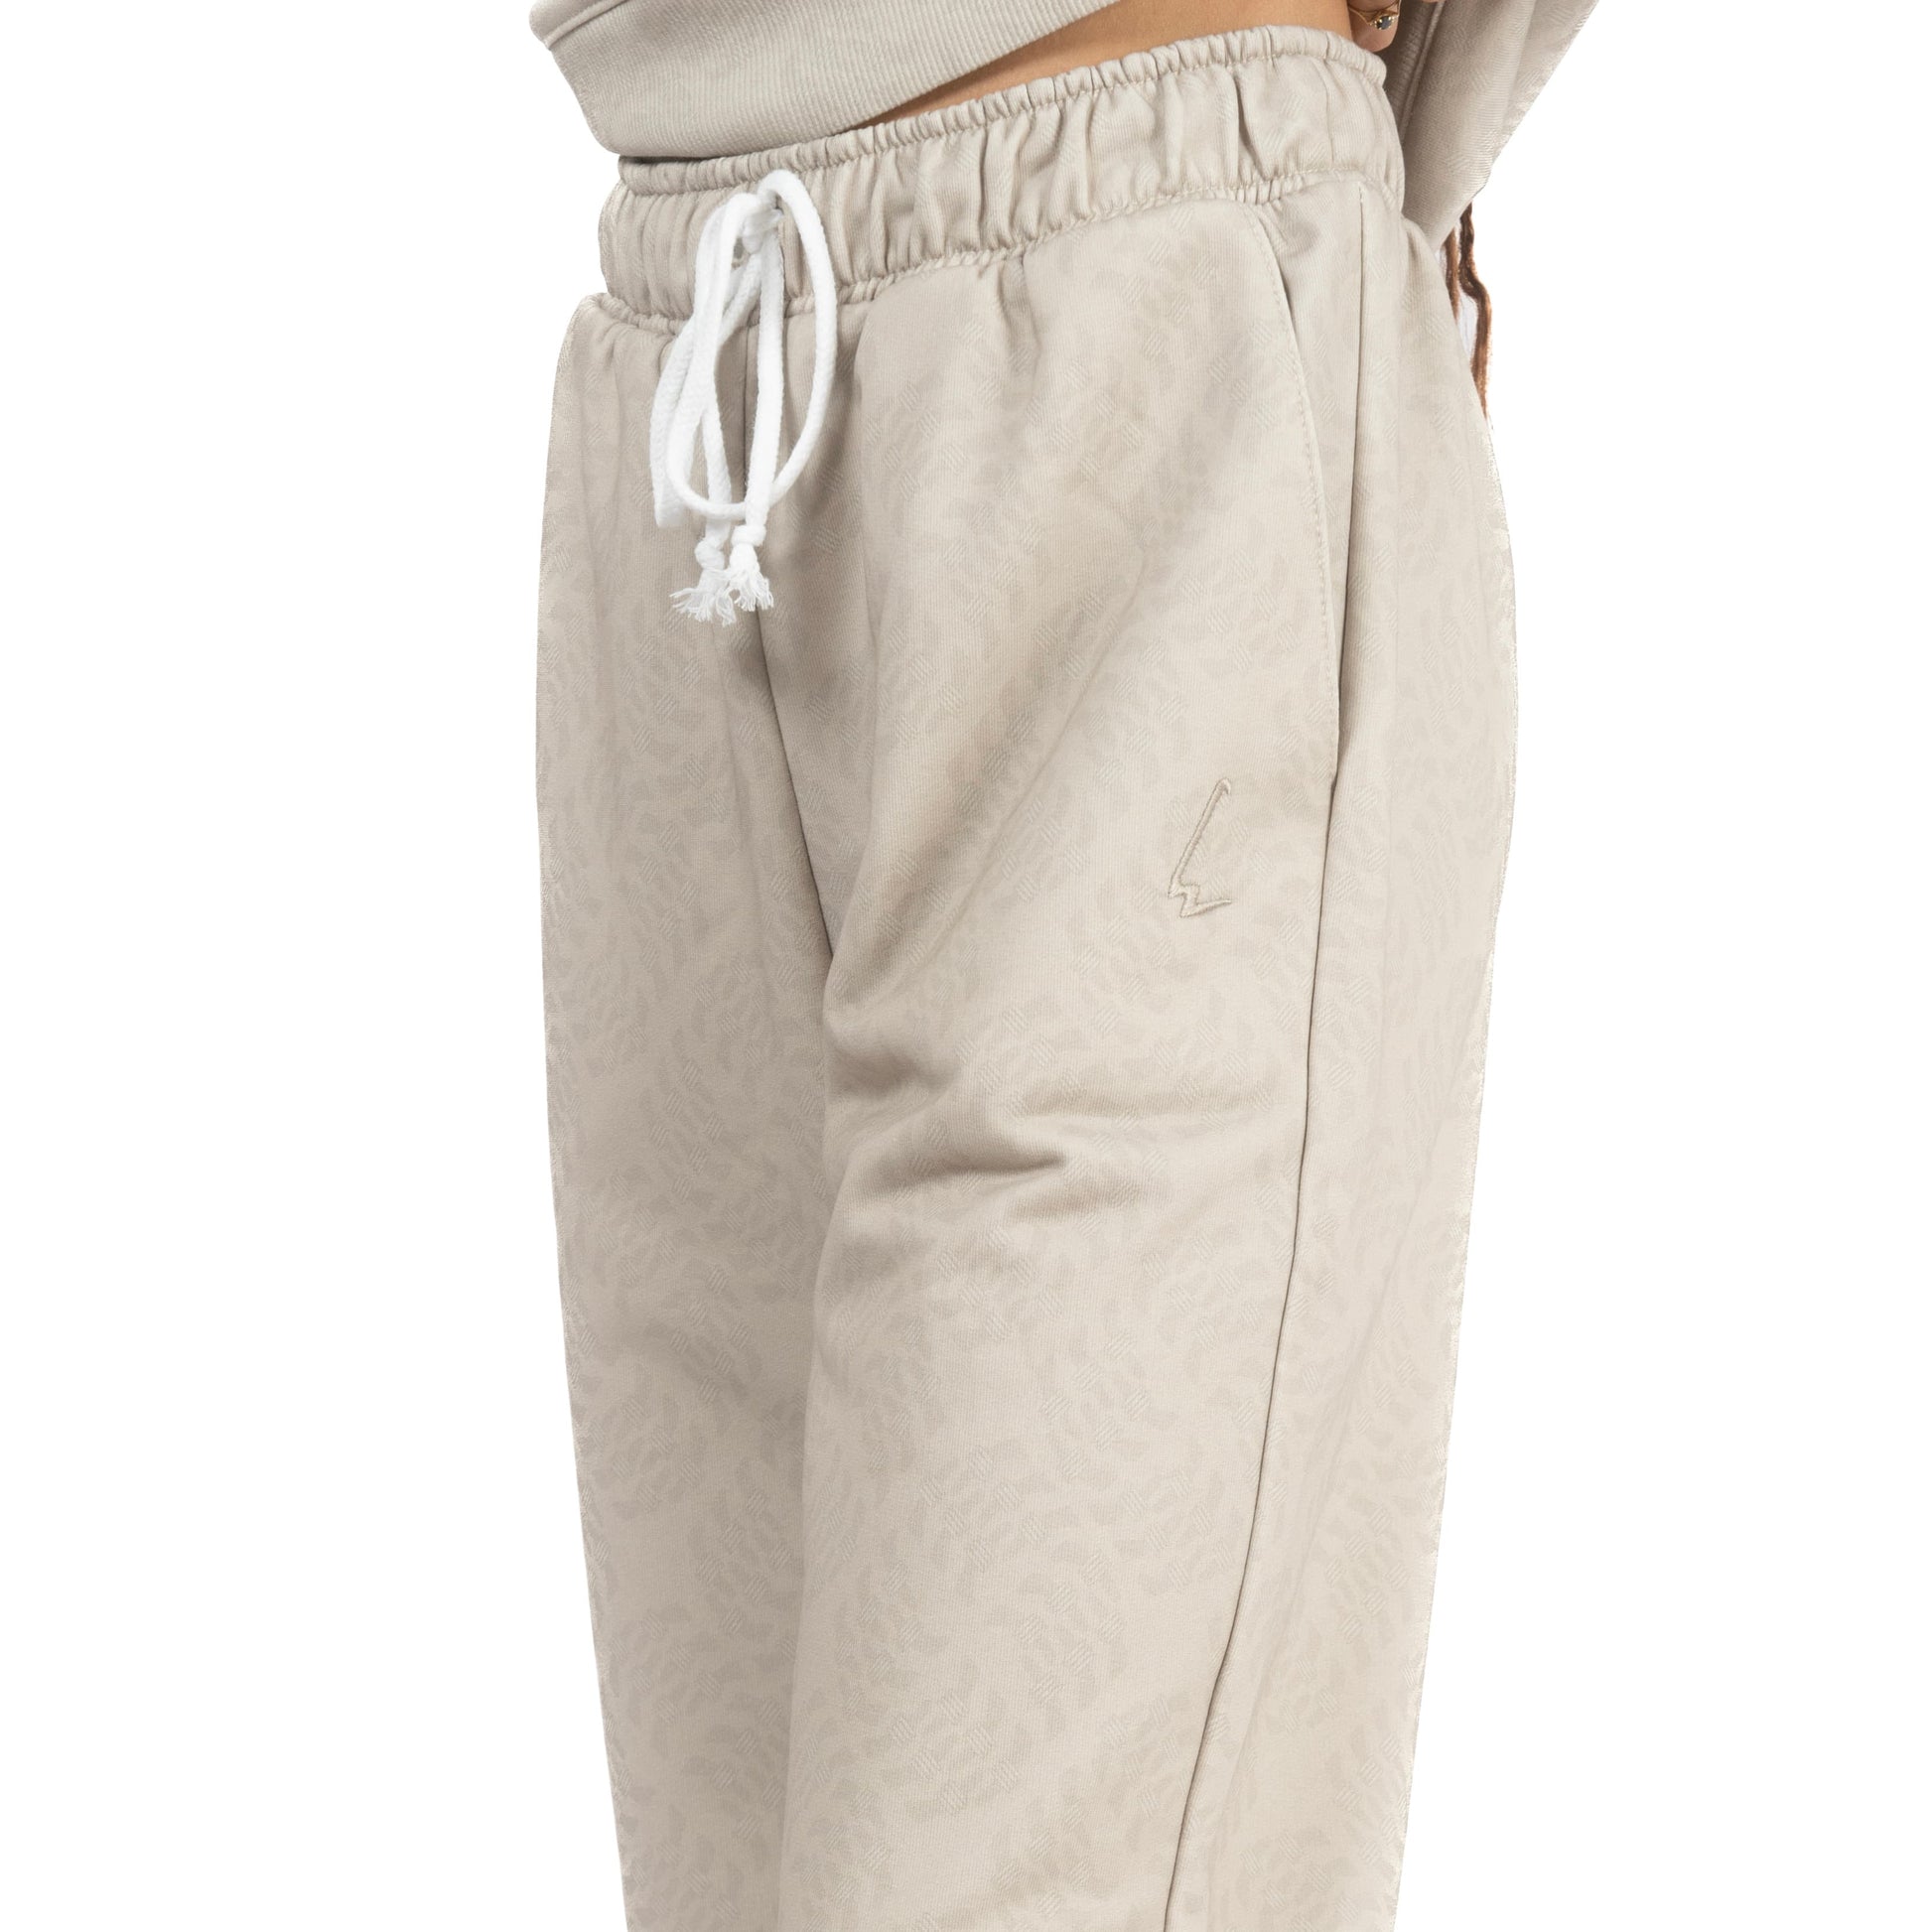 lucewear: femme portant un pantalon de survêtement taupe